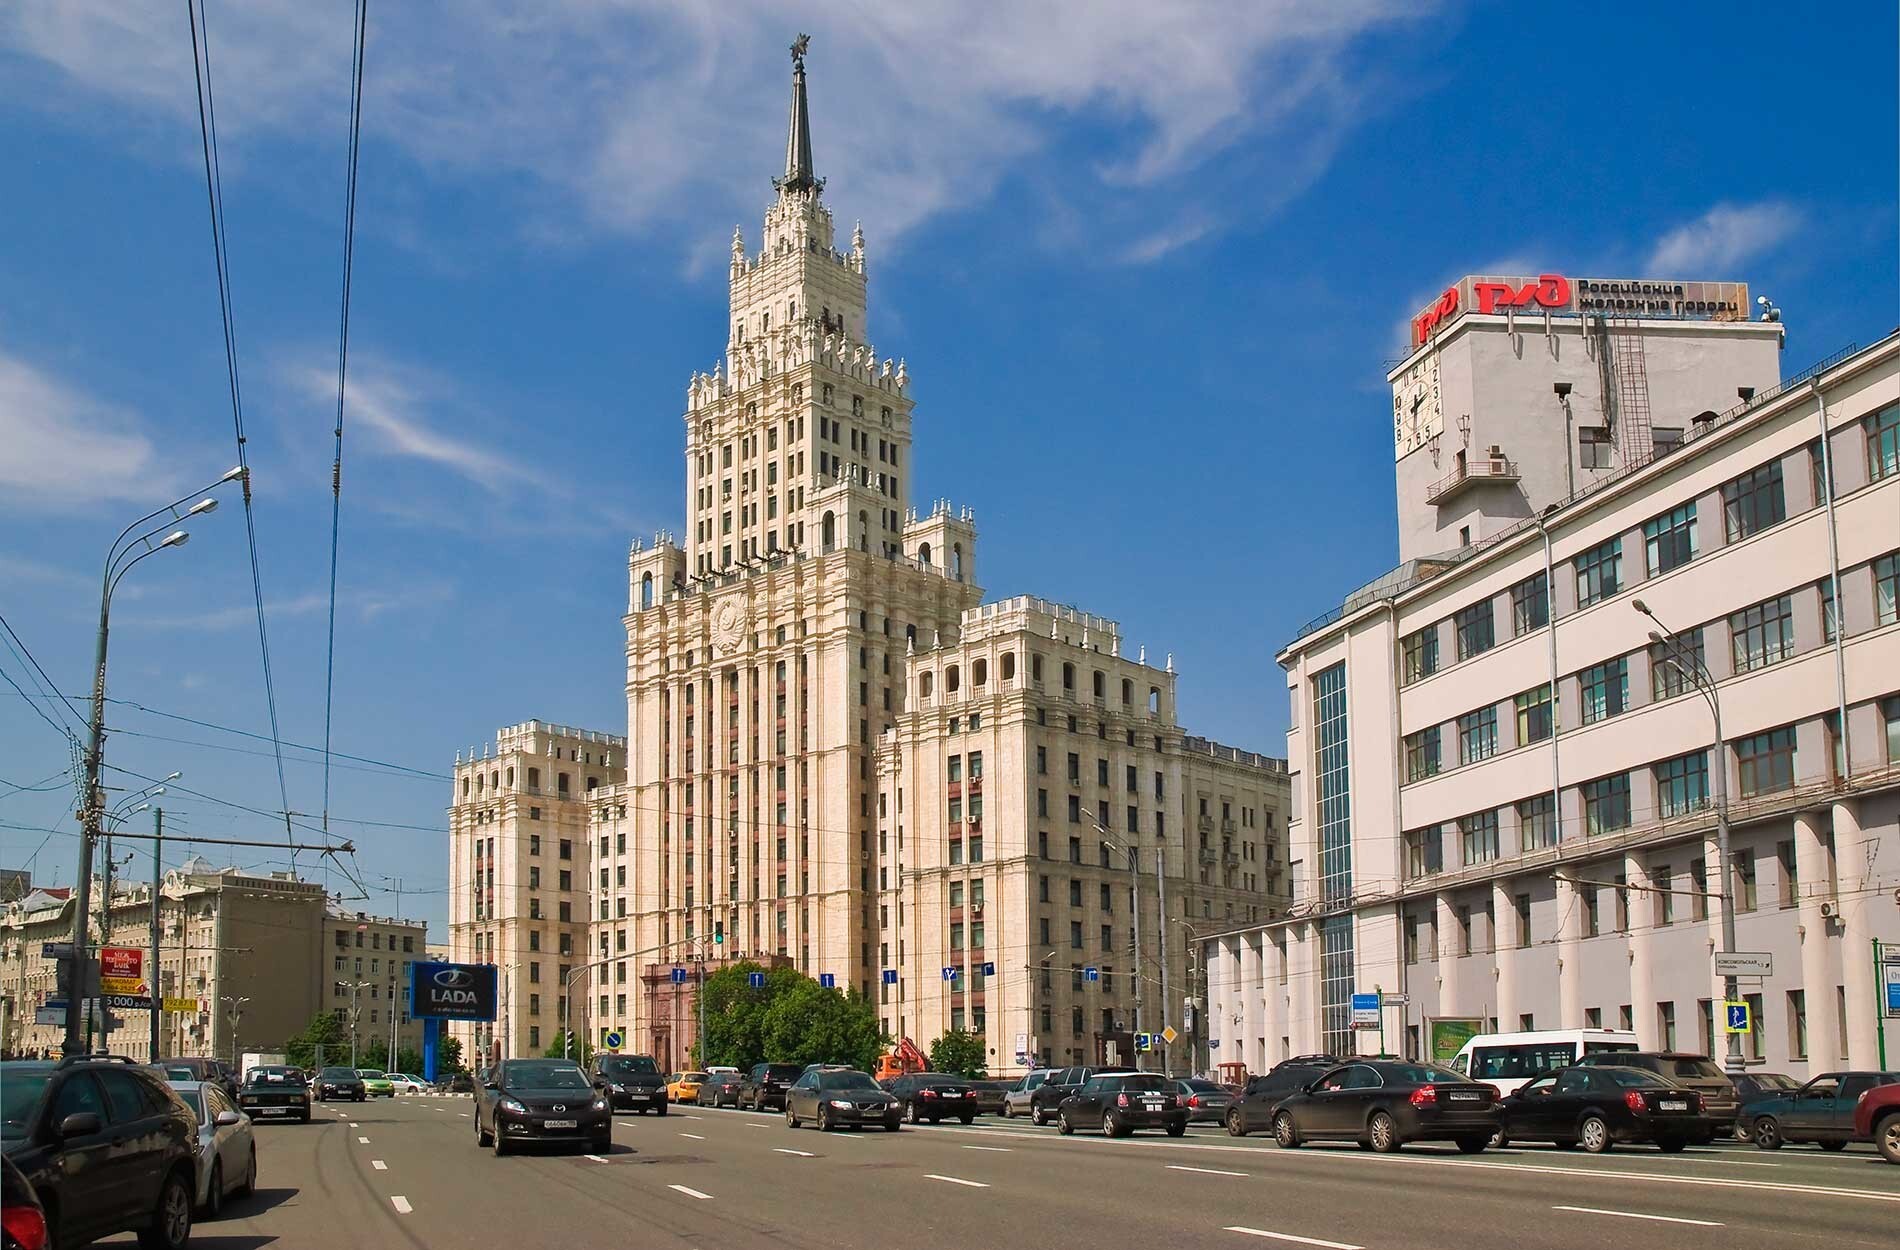 「クラスヌイエ・ヴォロータ」駅付近のスターリン様式の高層建築